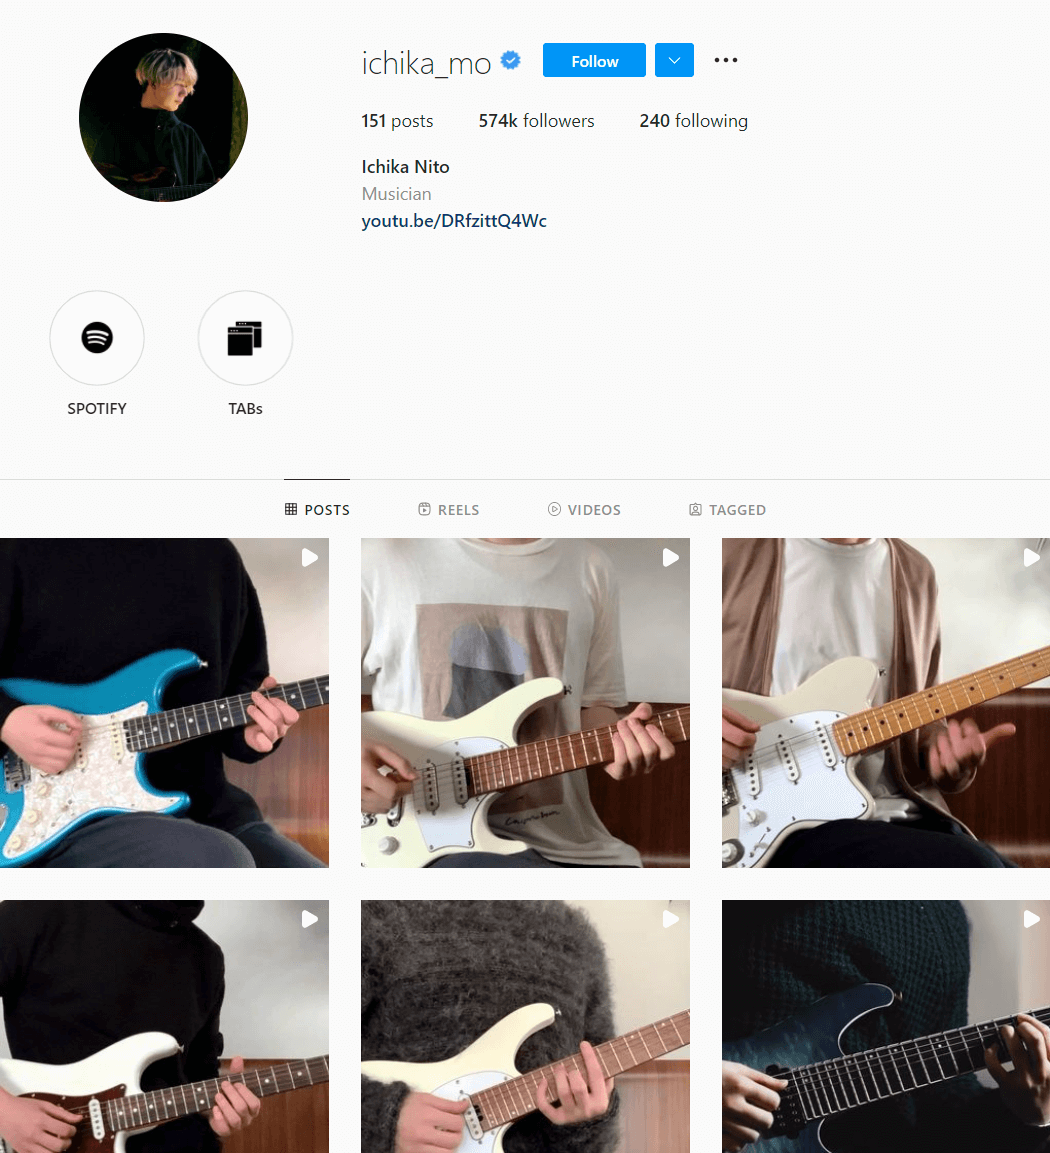 ichika_mo guitar Instagram account